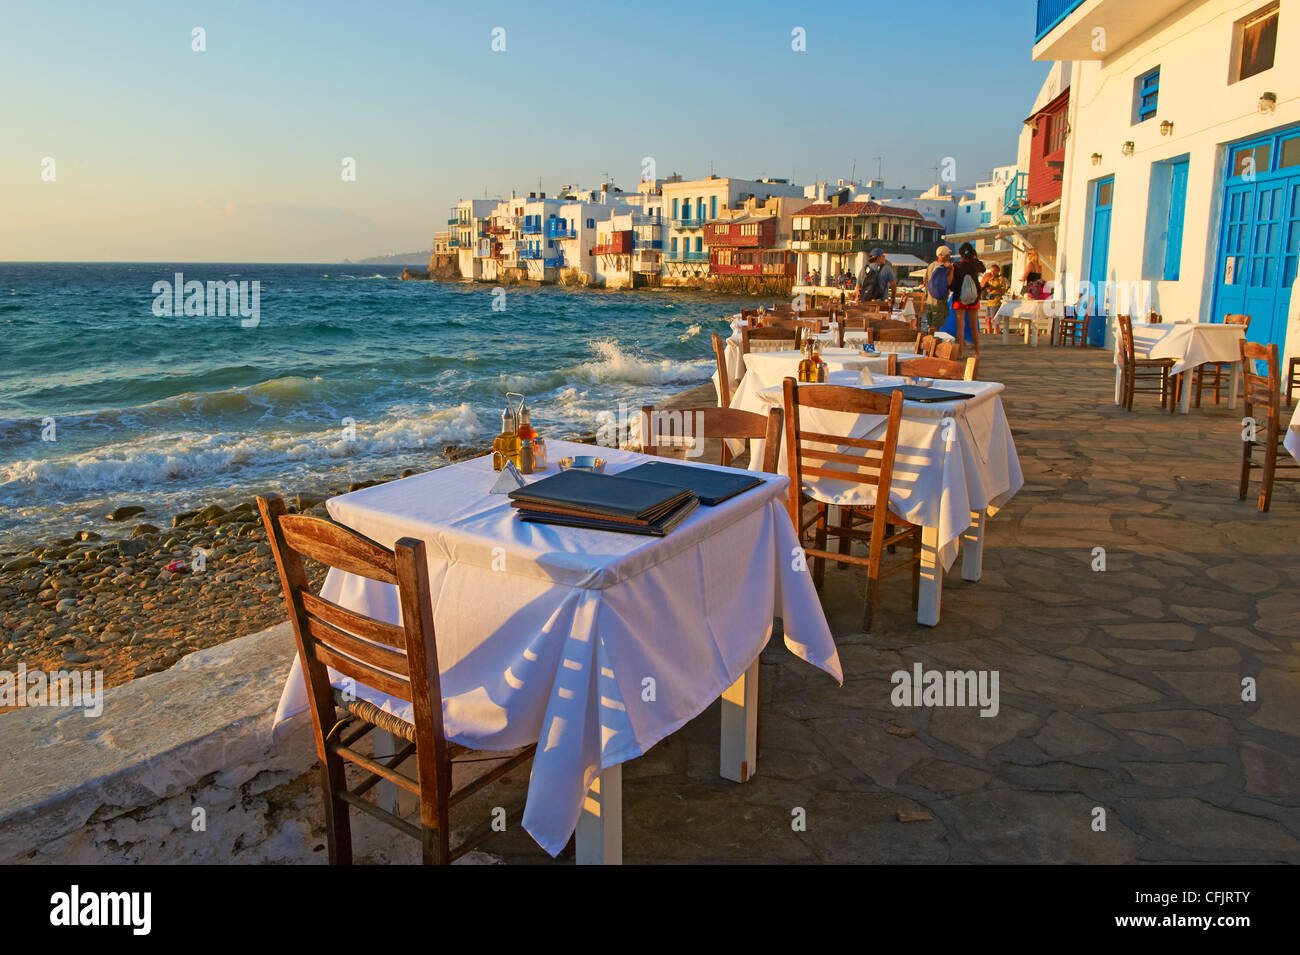 Little Venice, distrito Alefkandra, Chora (Hora), Mykonos, Islas Cícladas, las islas griegas, el Mar Egeo, Grecia, Europa Foto de stock